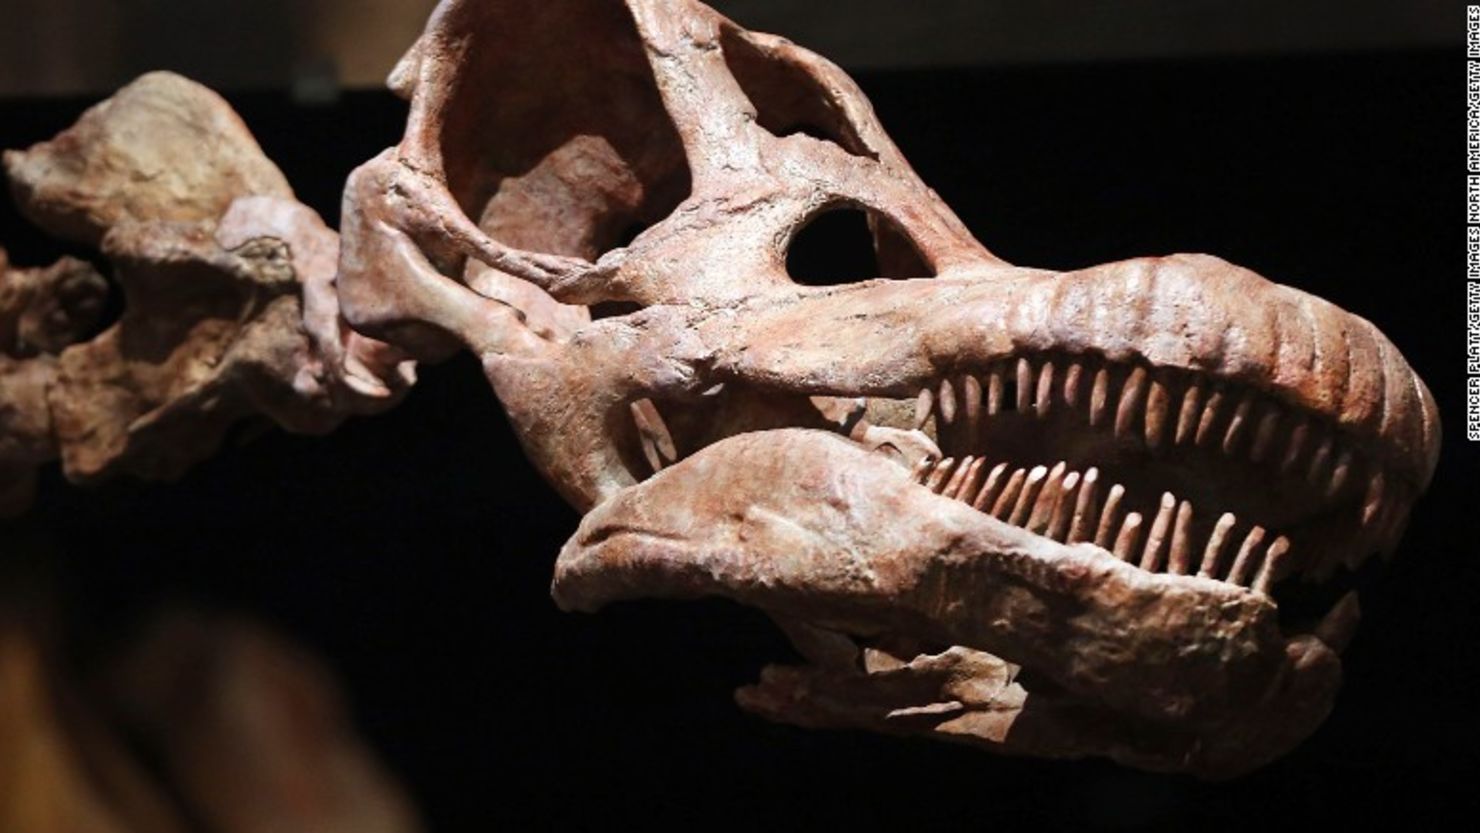 Una réplica del Titanosaurius, uno de los dinosaurios más grandes jamas descubiertos que fue exhibida en el Museo de Historia Natural.